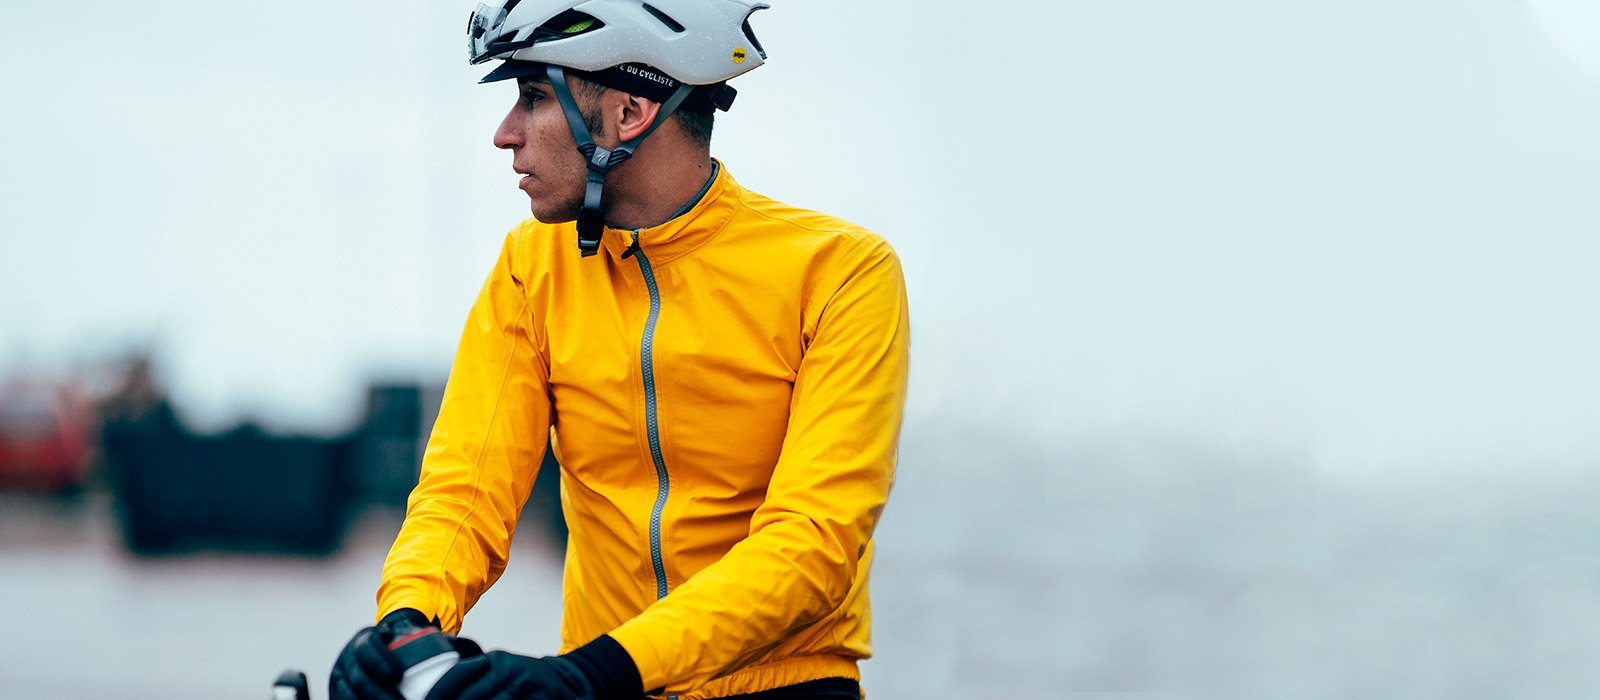 Jacket Suzette Homme Lemon Chrome Coats Café du Cycliste 